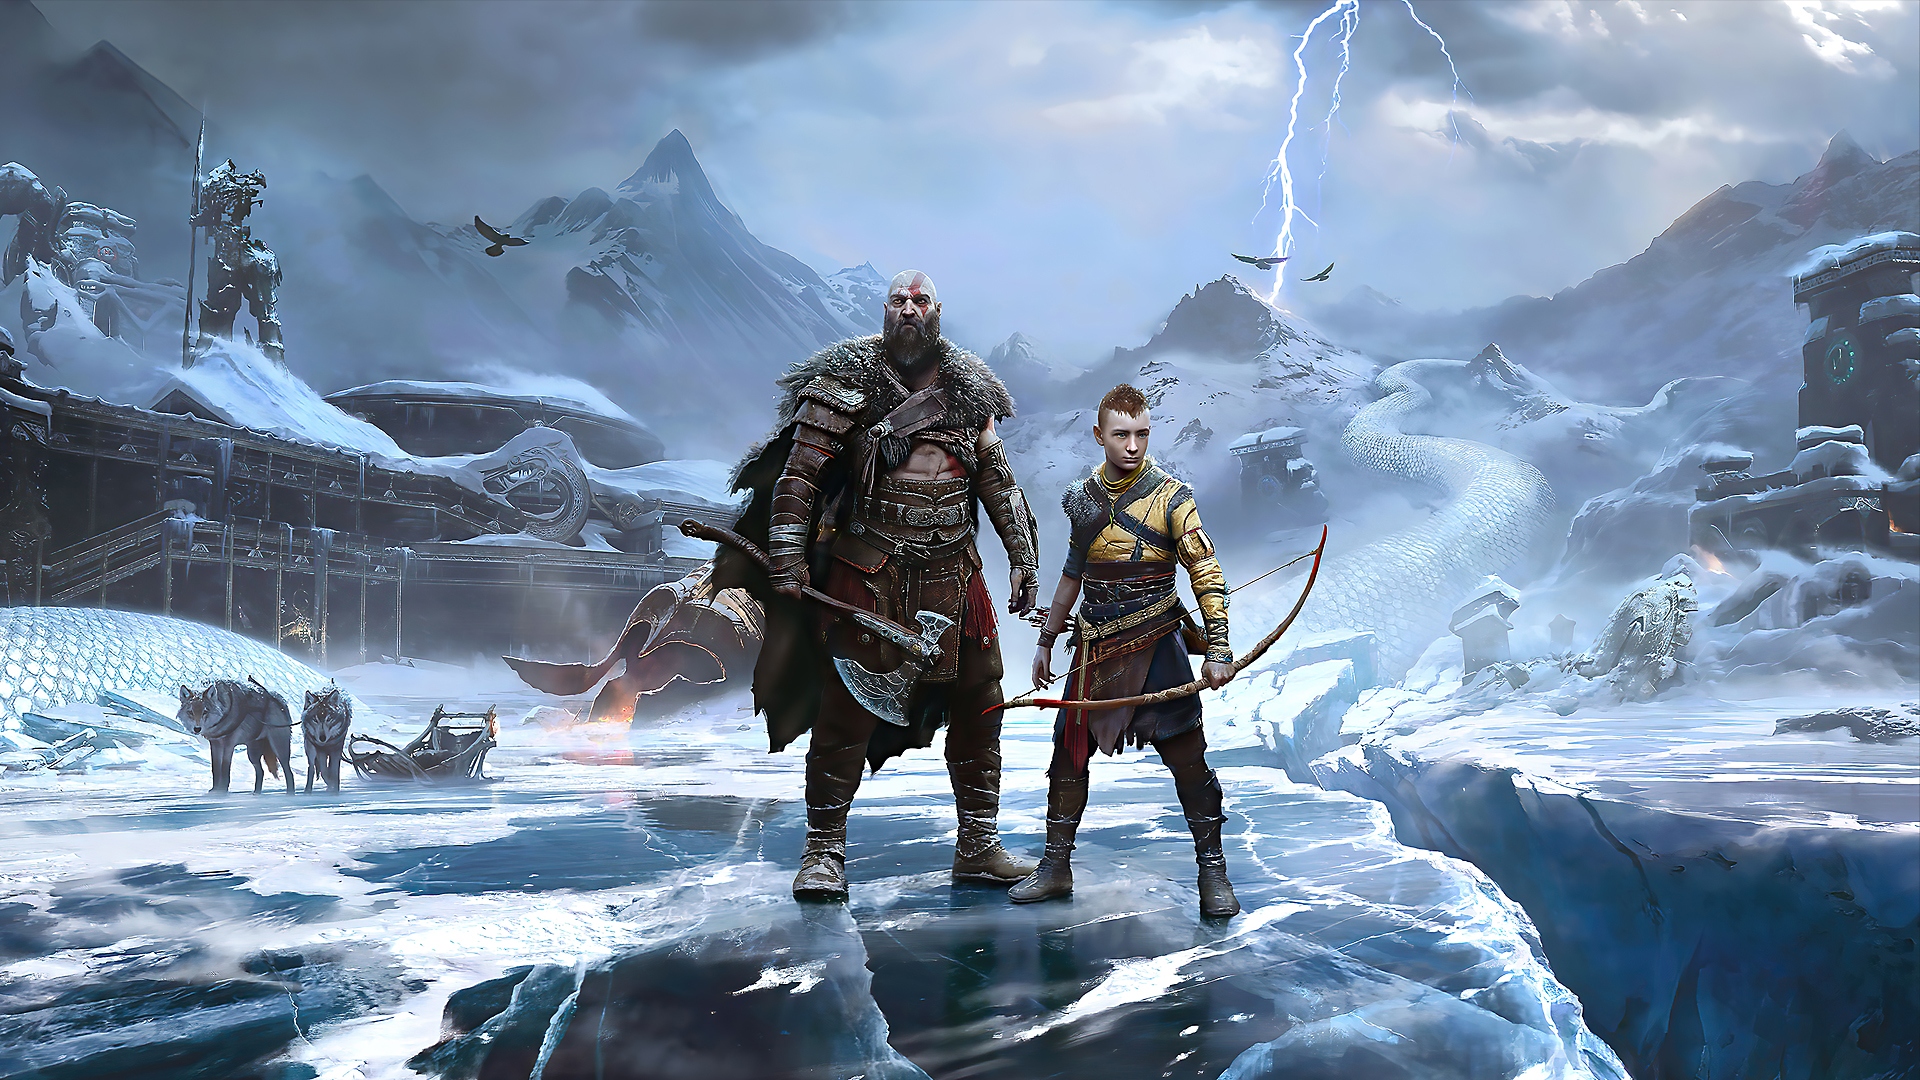 God of War: Ragnarök PlayStation Showcase 2021 trailer